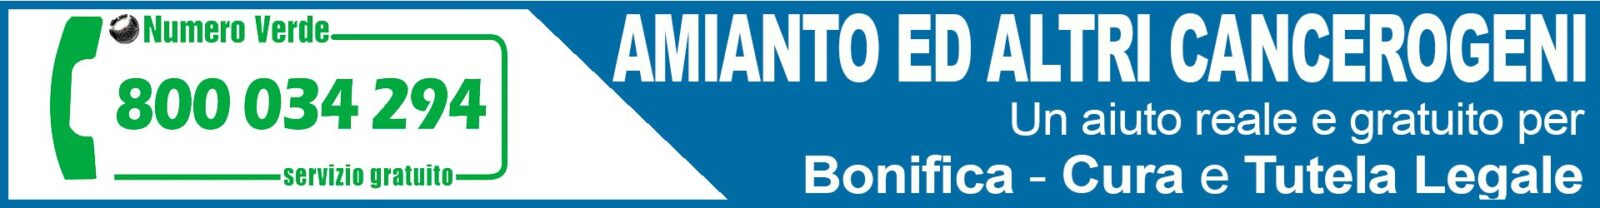 Osservatorio Nazionale Amianto Basilicata